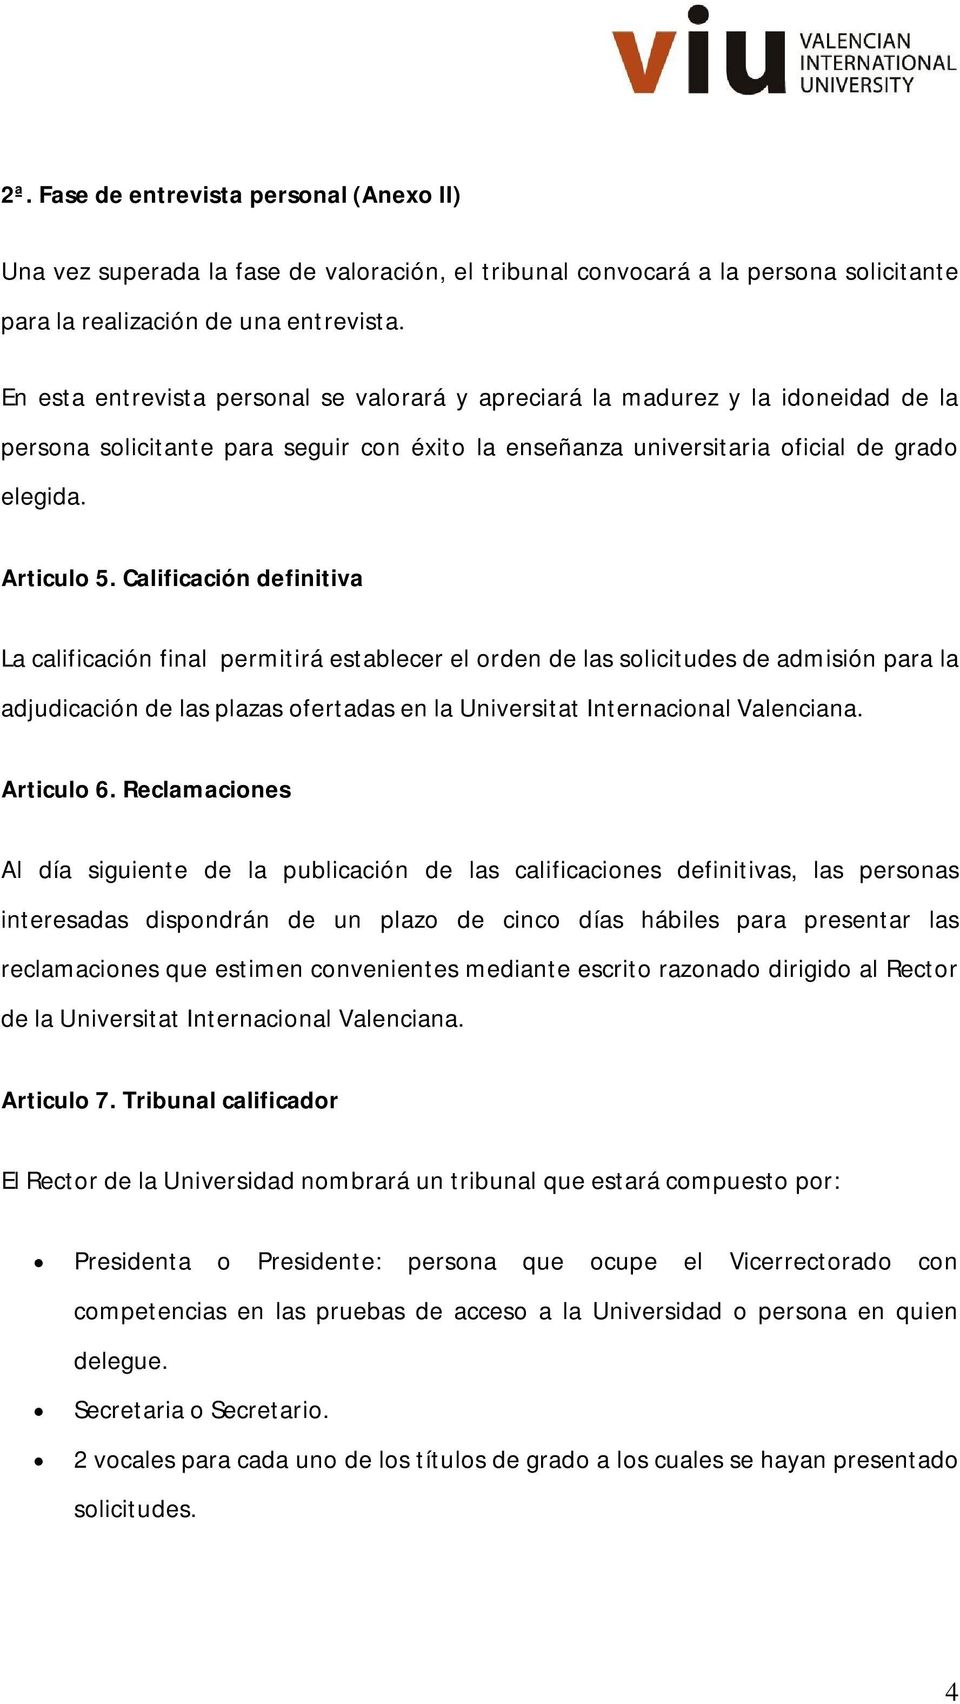 Calificación definitiva La calificación final permitirá establecer el orden de las solicitudes de admisión para la adjudicación de las plazas ofertadas en la Universitat Internacional Valenciana.